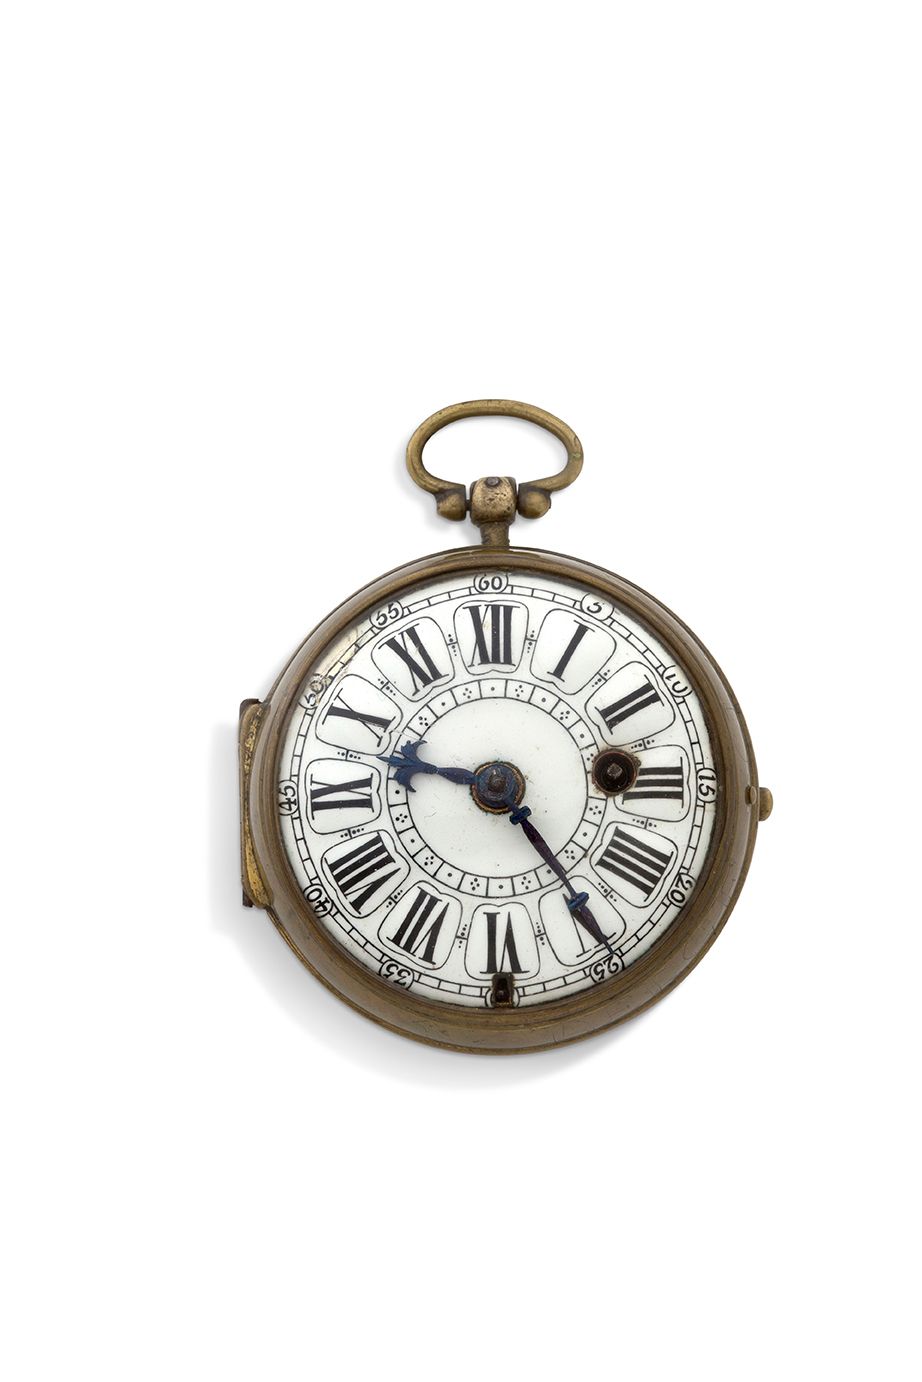 N. MORNAND, Paris 
Reloj cebolla de metal con péndulo



Caja con bisagras, tota&hellip;